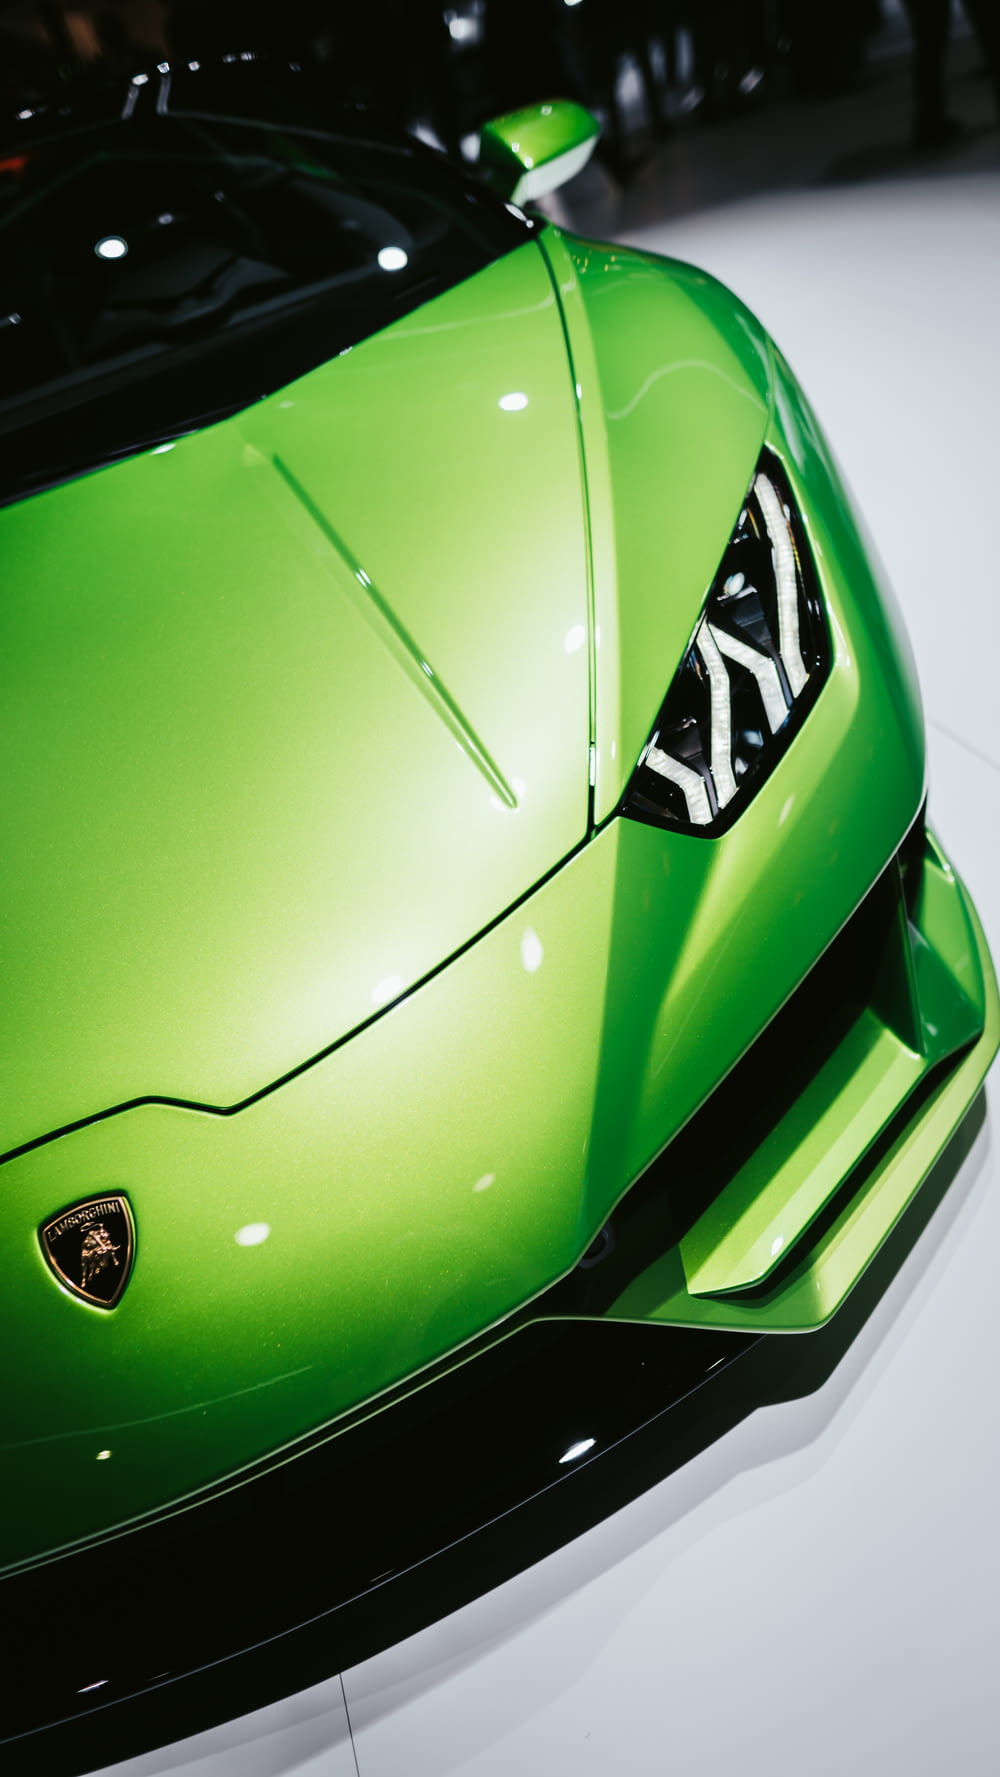 a green sports car